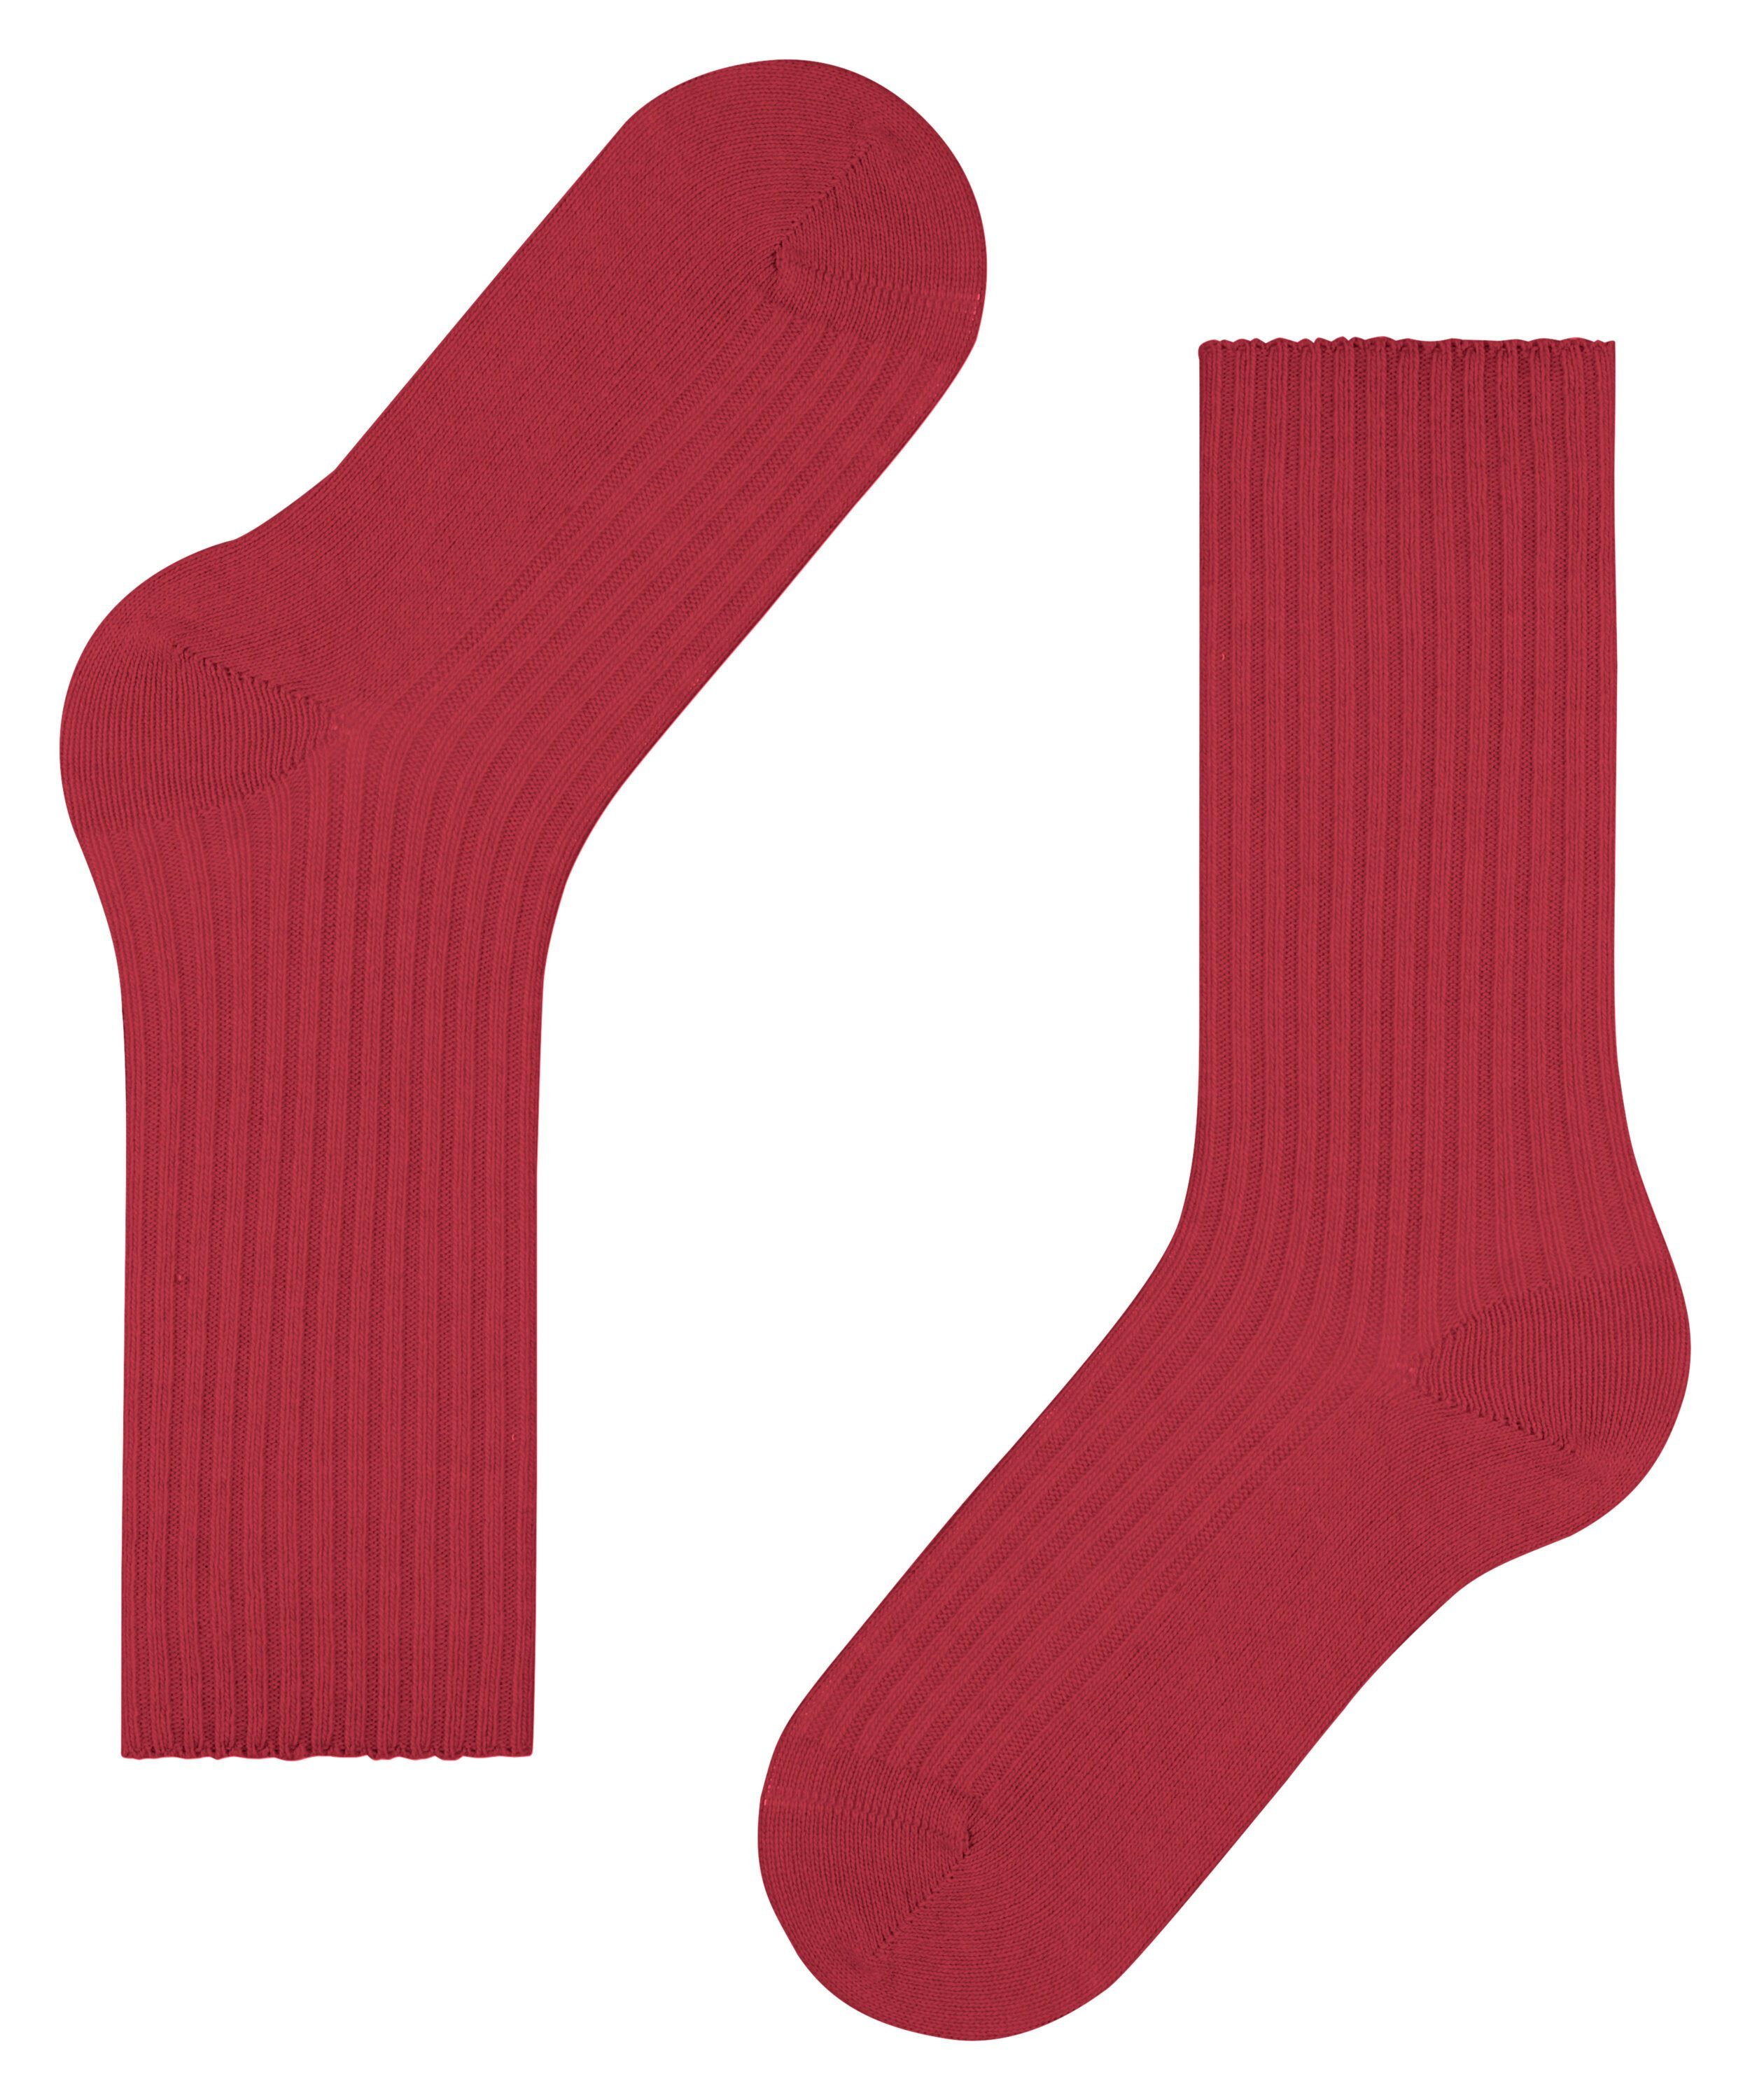 (1-Paar) (8228) Cosy scarlet Boot Socken FALKE Wool